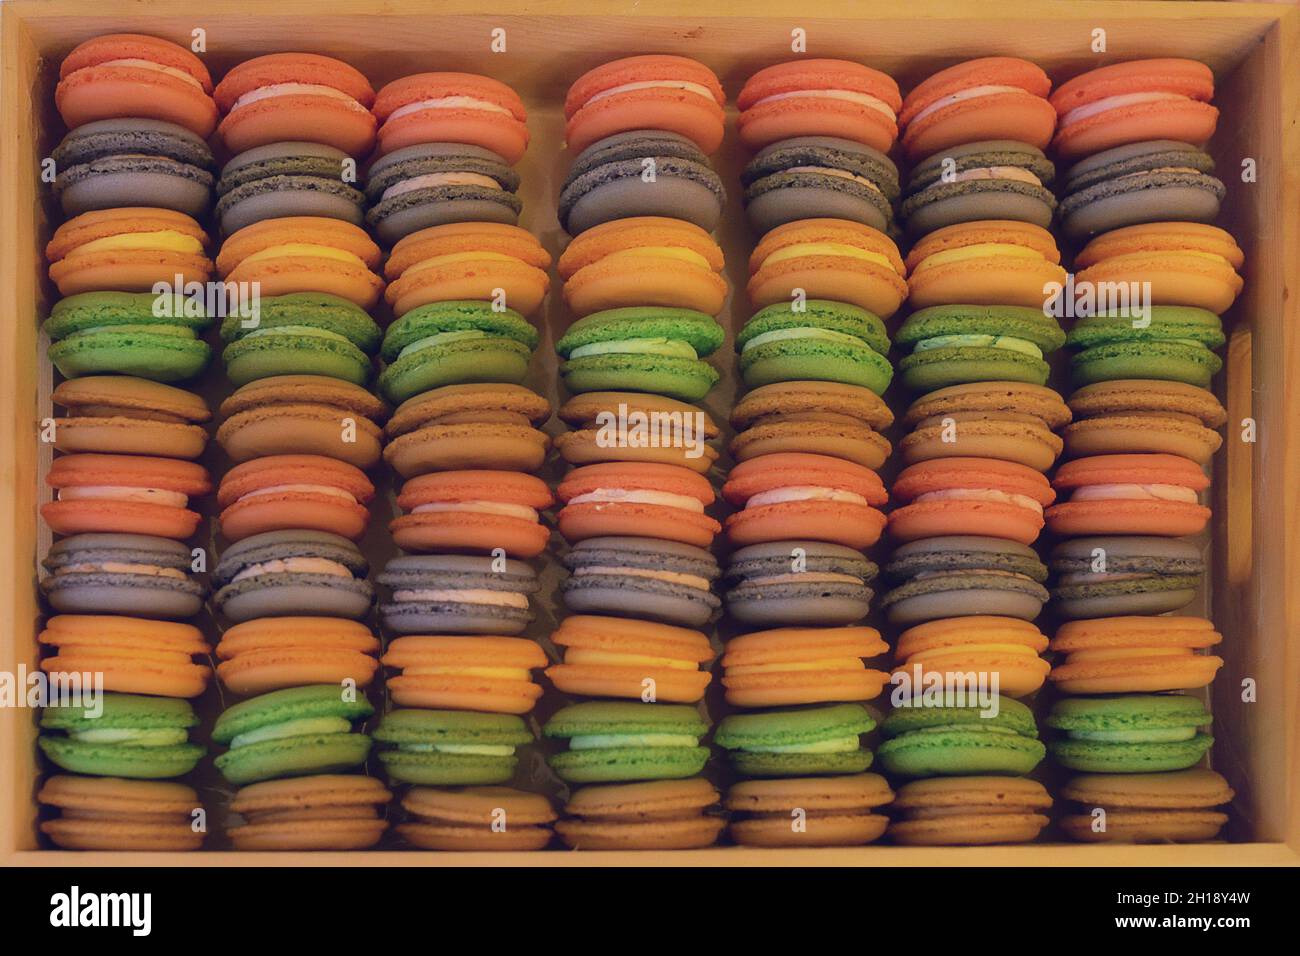 Pastellmakarons, farbenfrohe Lebensmittelhintergrund, wiederholtes Muster beliebter französischer Süßwaren in einer Holzkiste mit weichem Warmlichtfilter Stockfoto